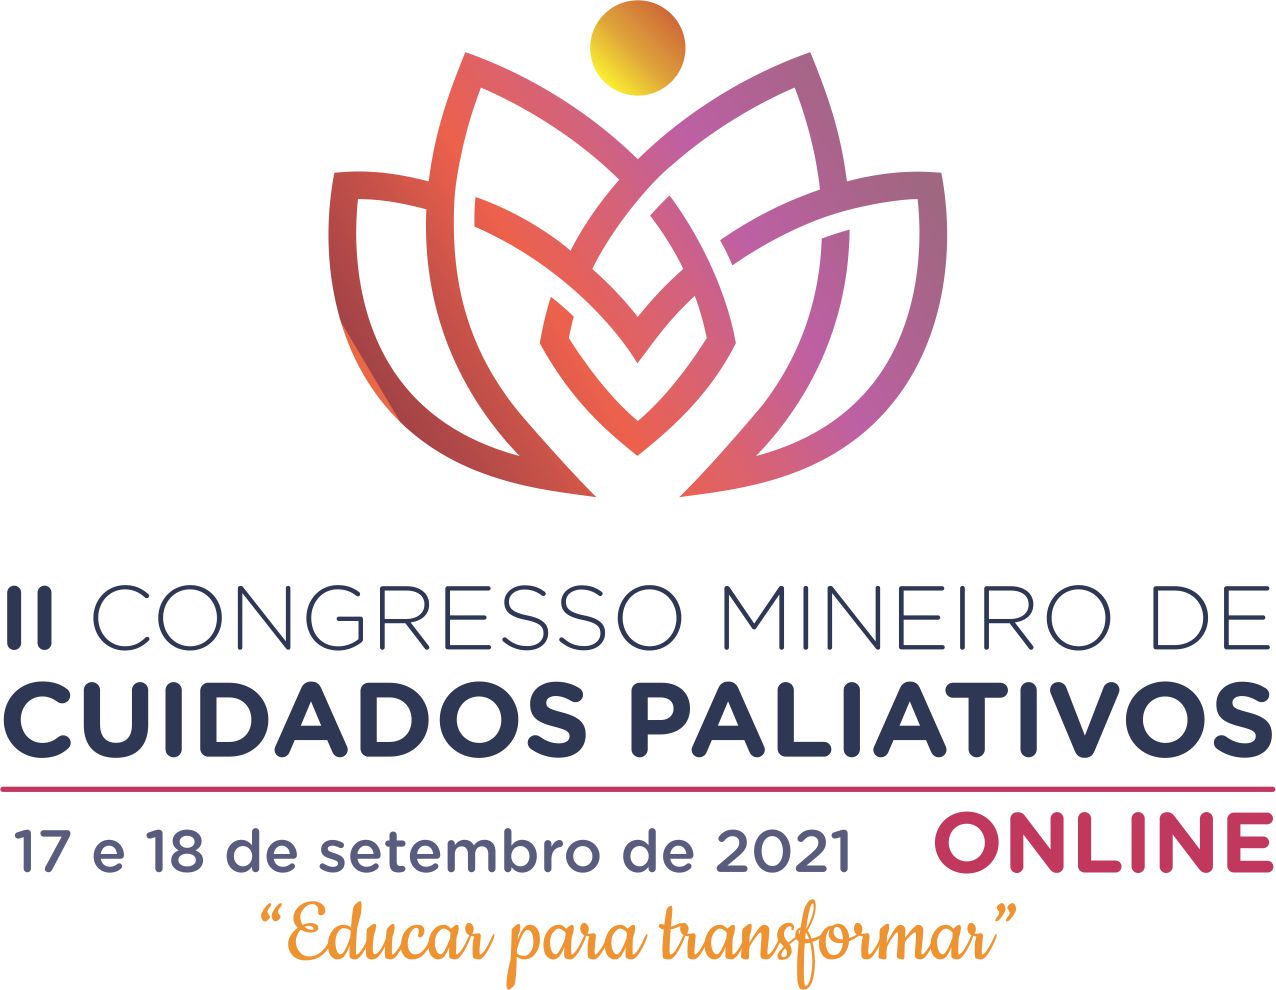 II Congresso Mineiro de Cuidados Paliativos foca na educação transformadora